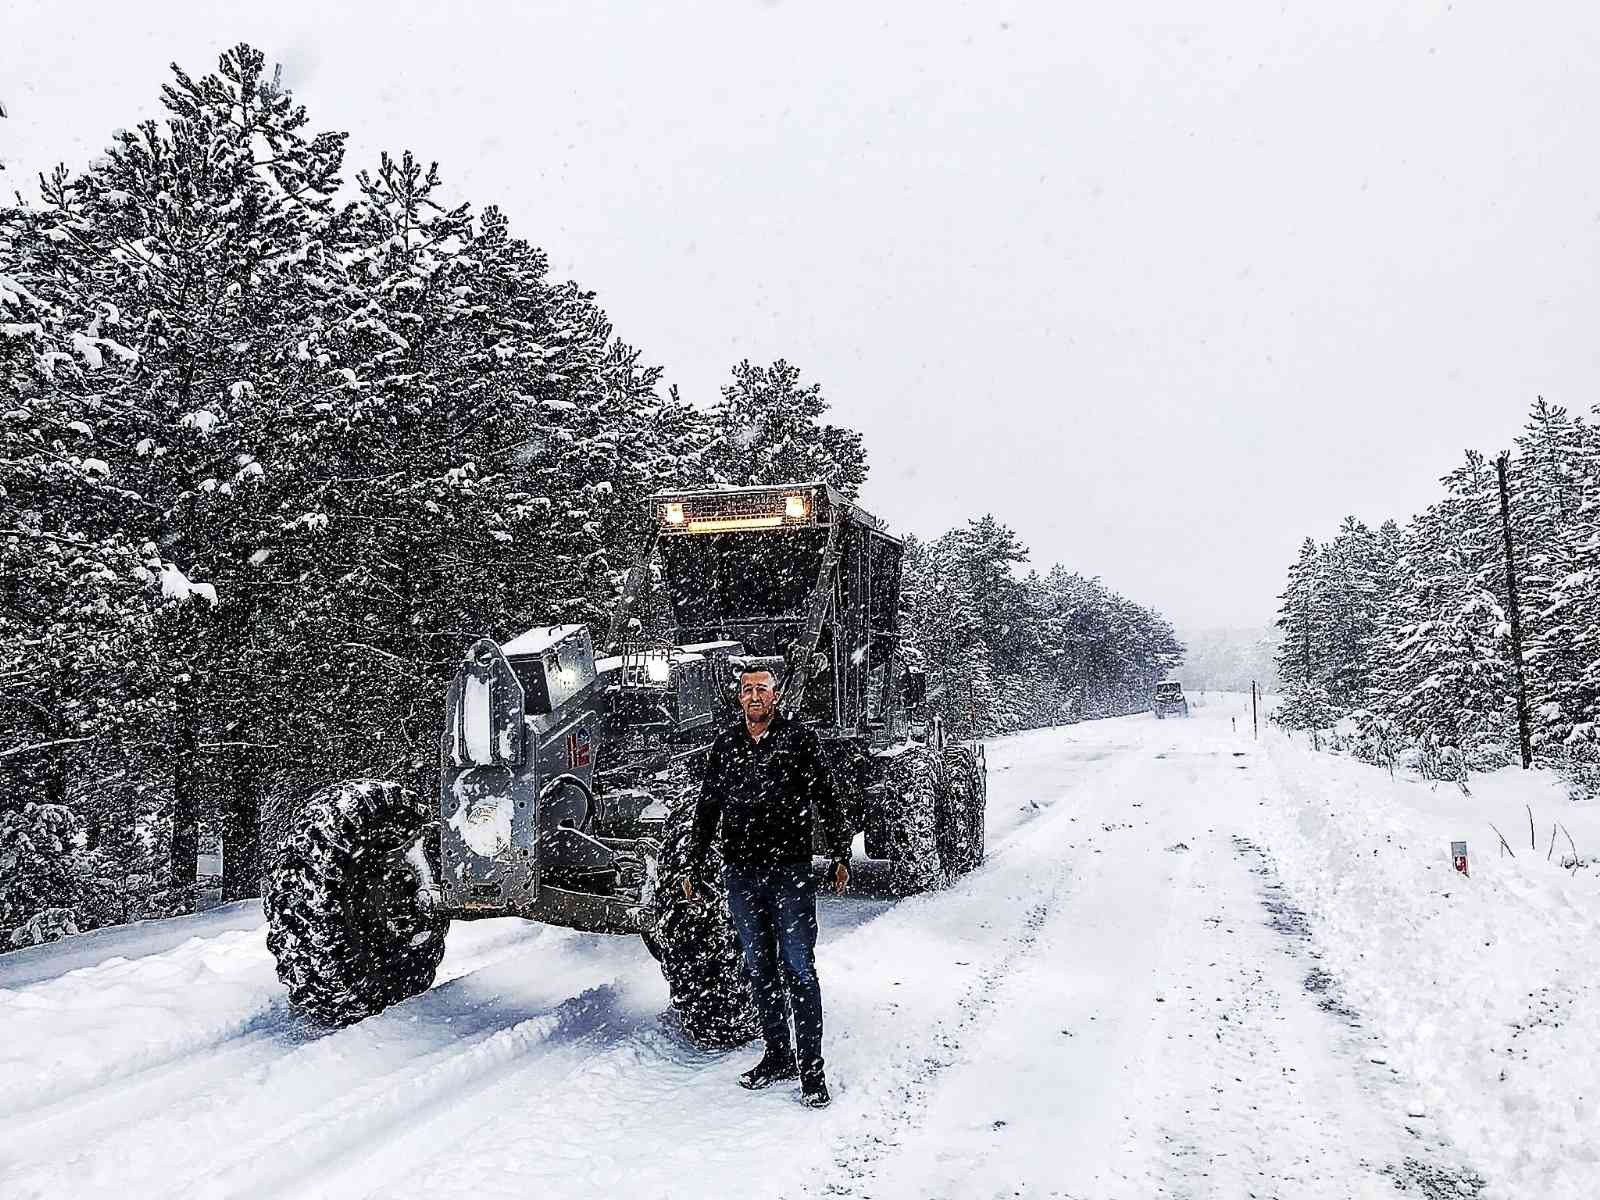 Kütahya Orman Bölge Müdürlüğü’nden karla mücadele çalışmalarına destek #kutahya